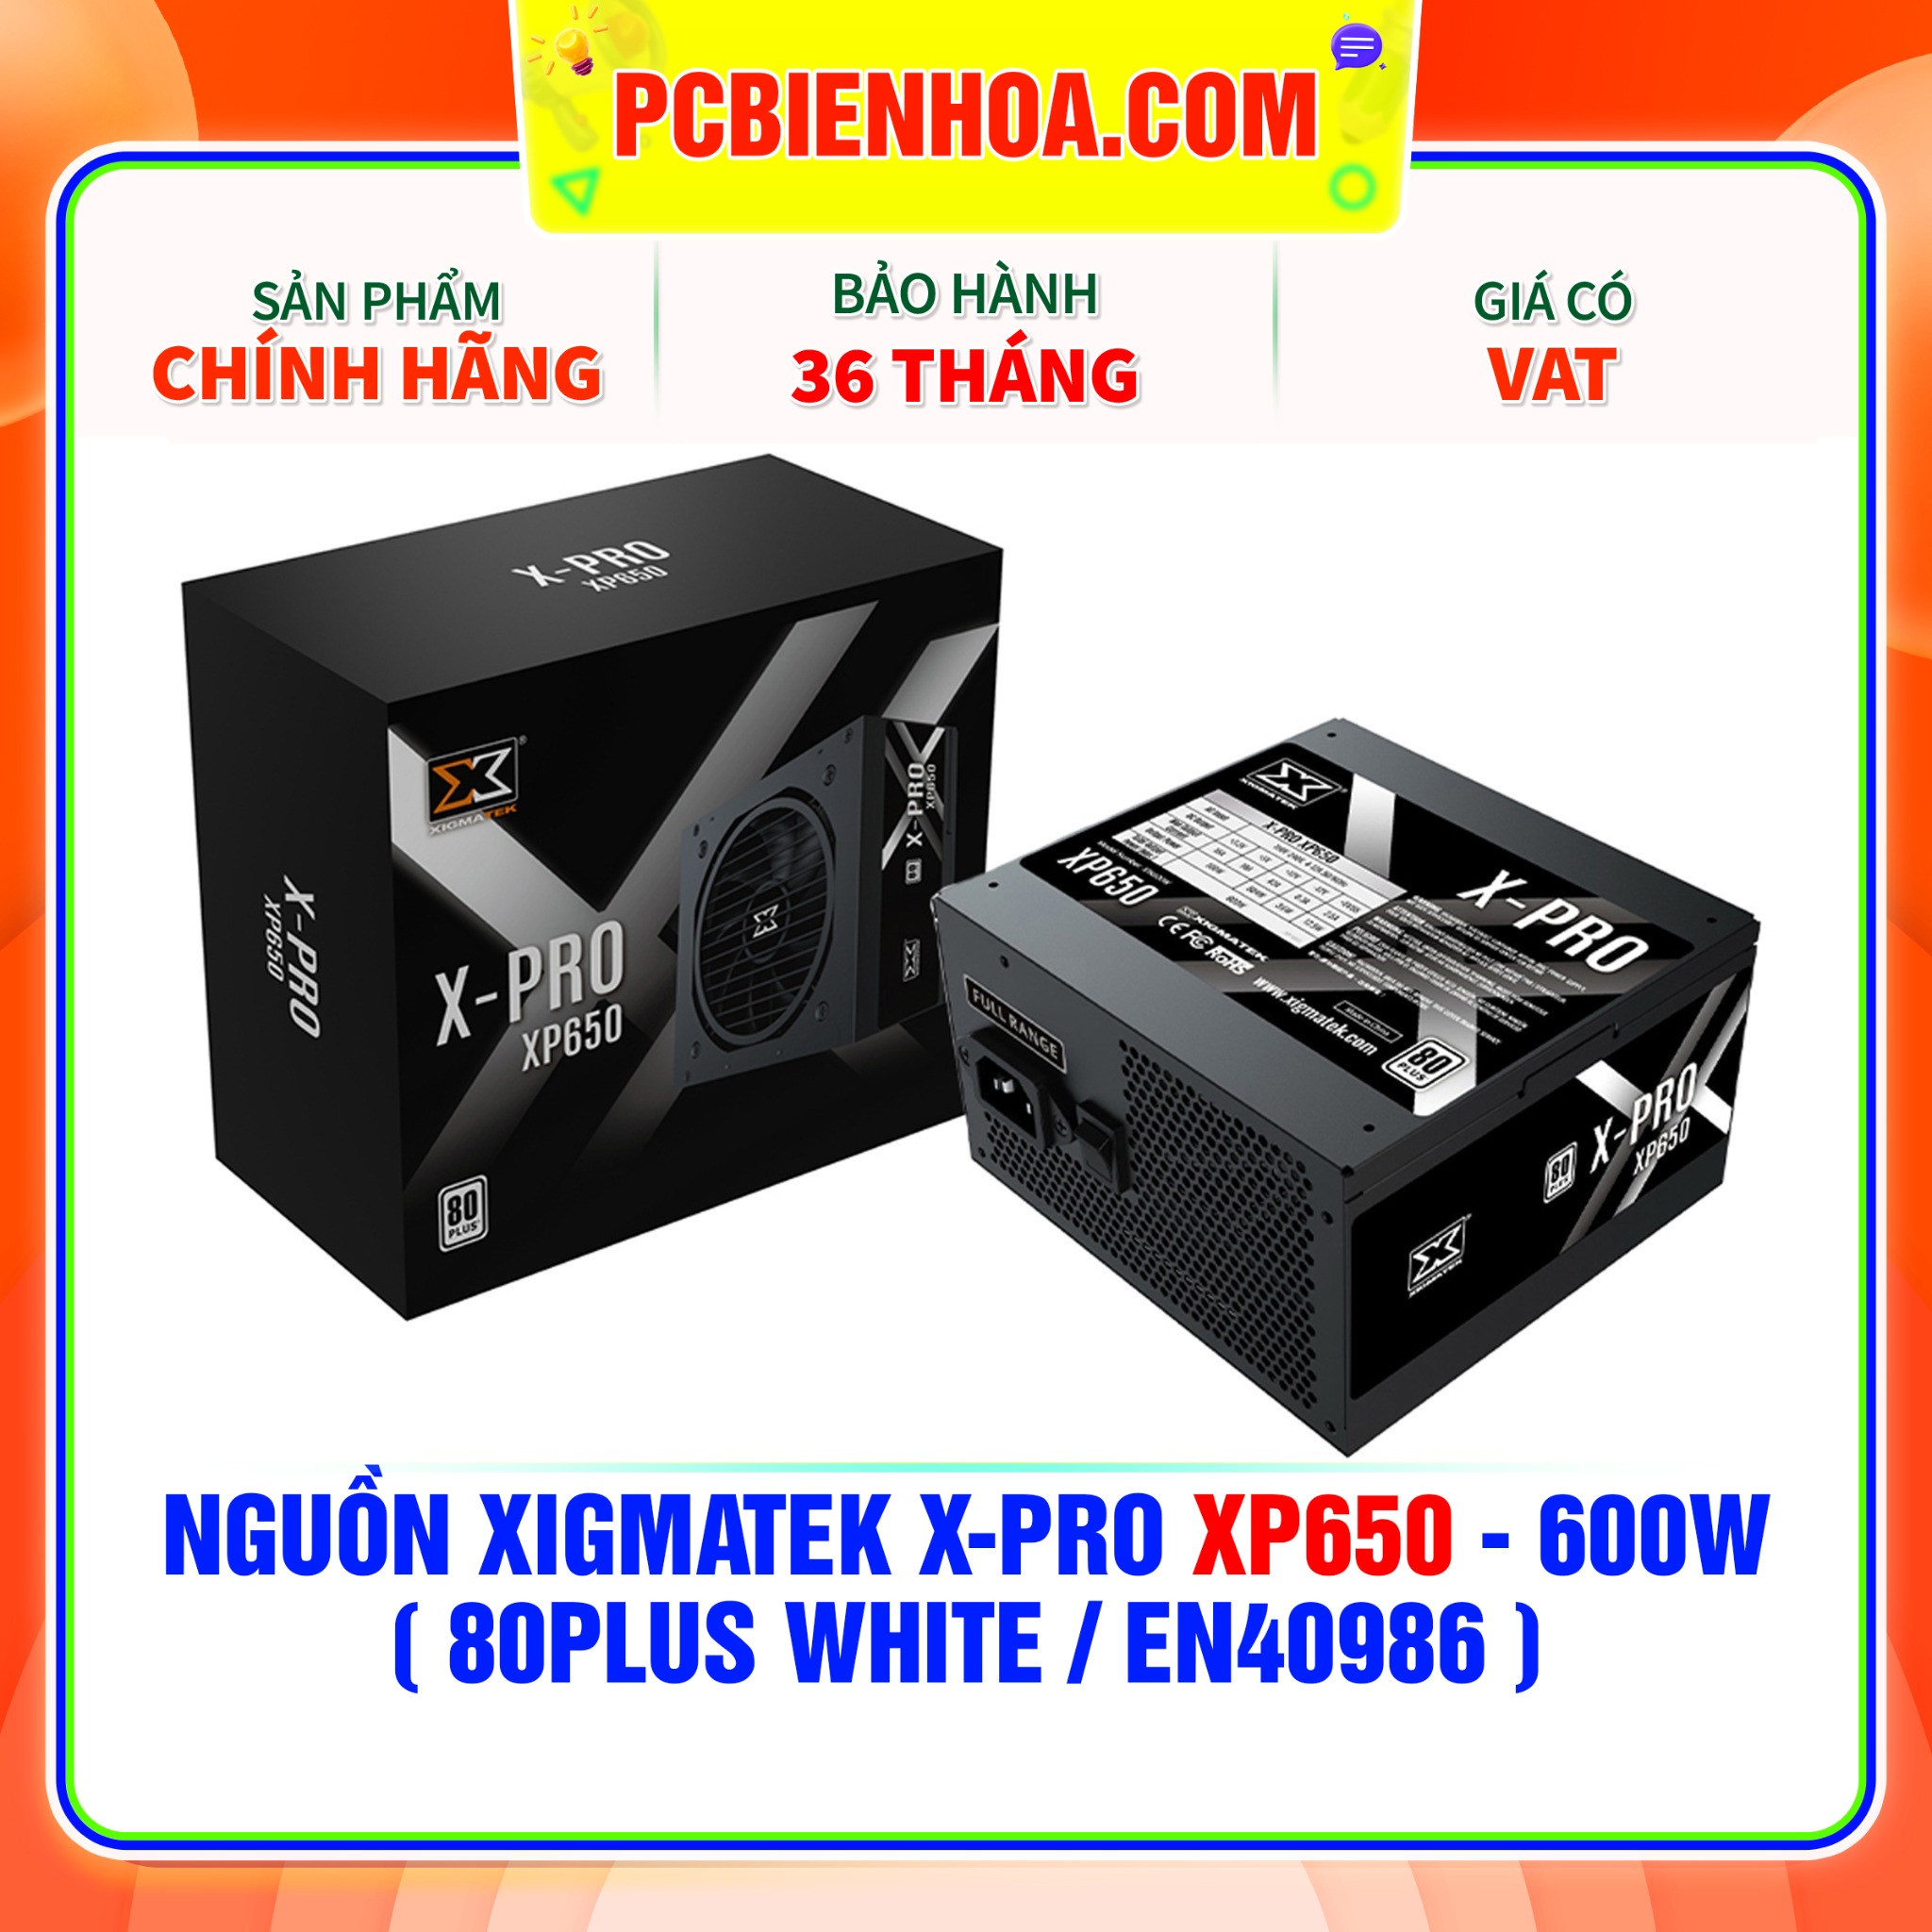 NGUỒN XIGMATEK X-PRO XP650 - 600W  80PLUS WHITE EN40986